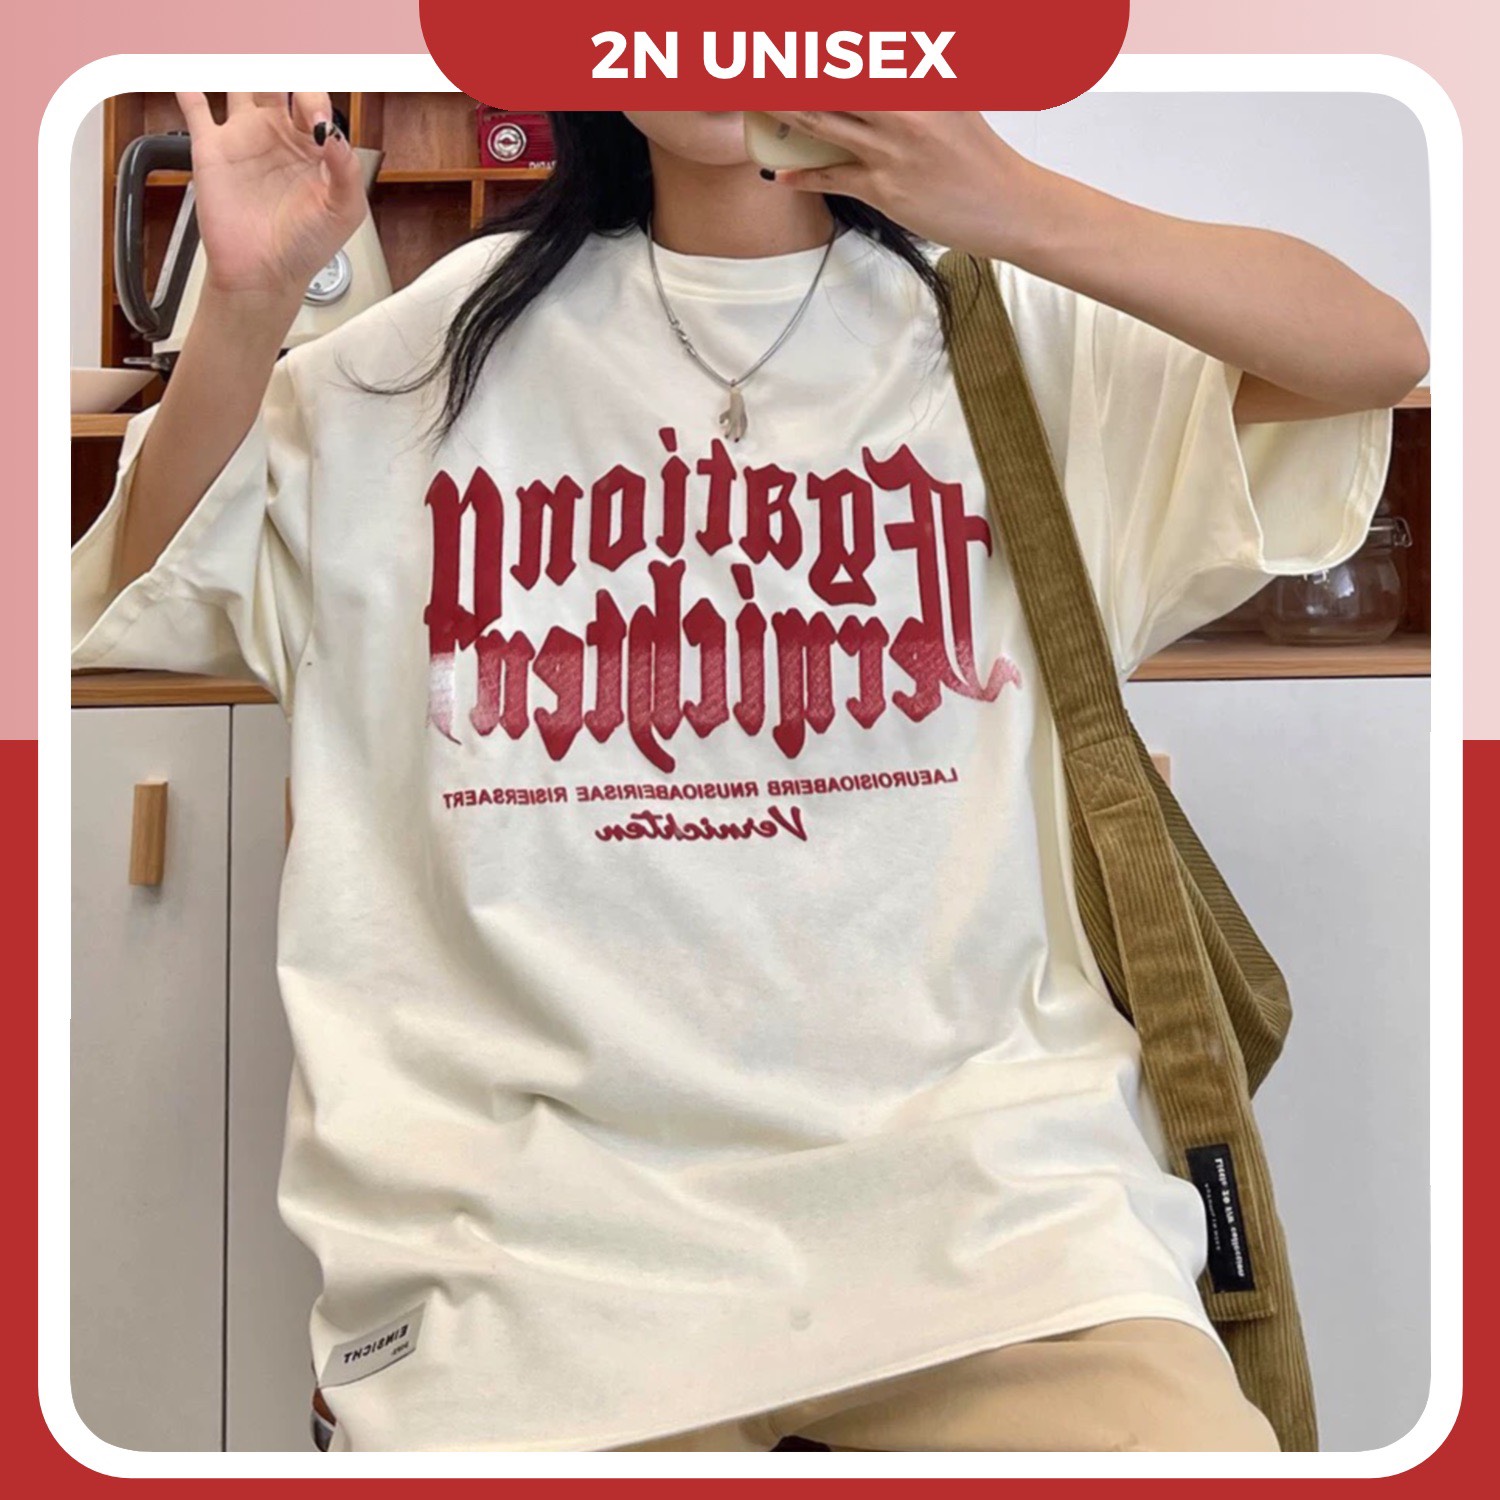 Áo thun tay lỡ form rộng - phông nam nữ cotton oversize - T shirt chữ in nổi a - 2N Unisex